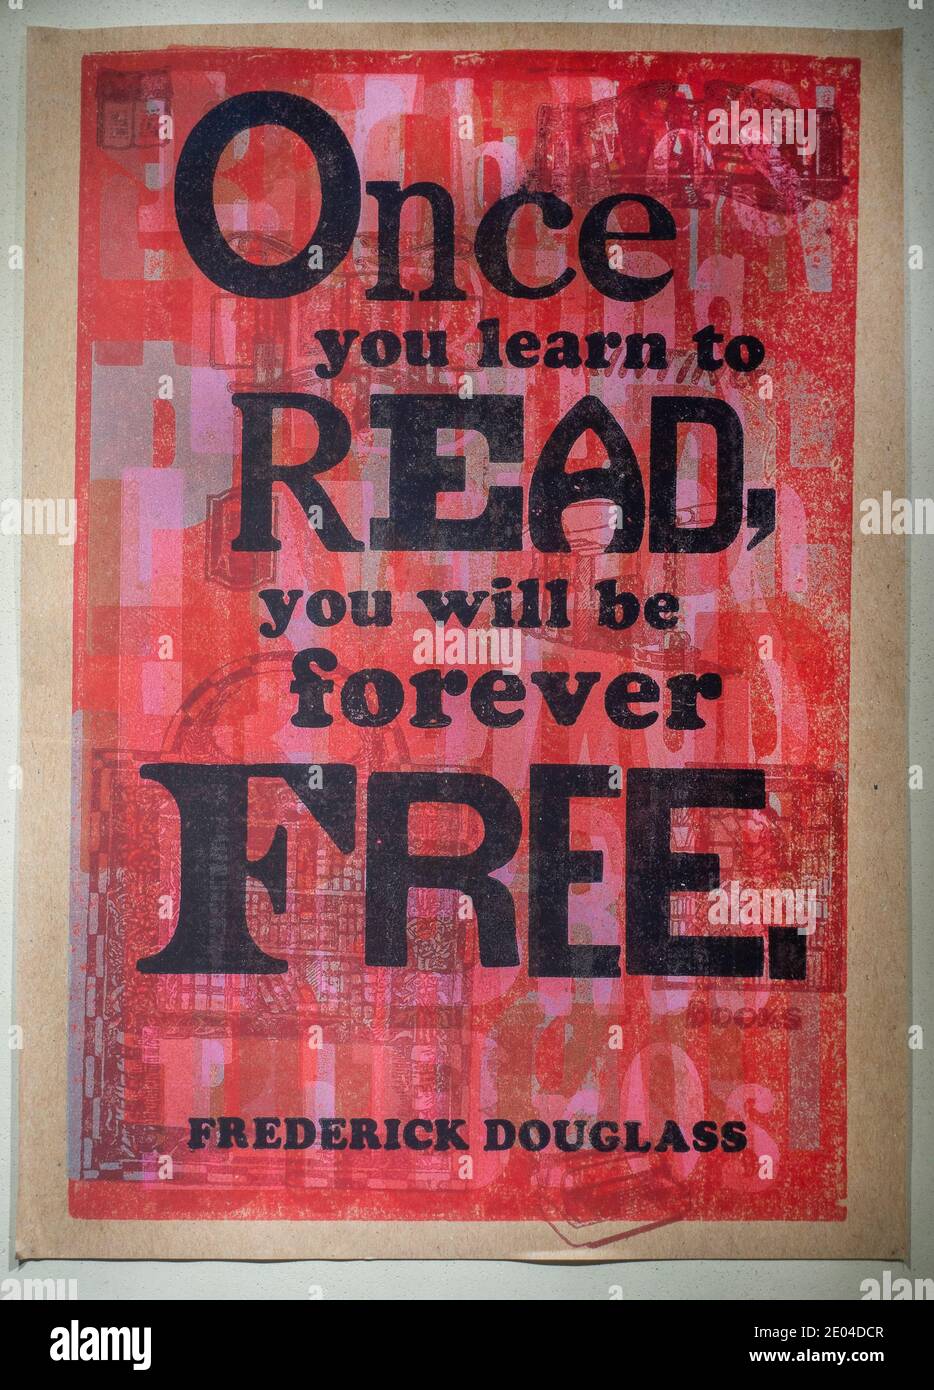 Sobald Sie lernen zu lesen, werden Sie für immer frei sein Saying by Frederick Douglass Artwork in der Brooklyn Public Library NYC Stockfoto